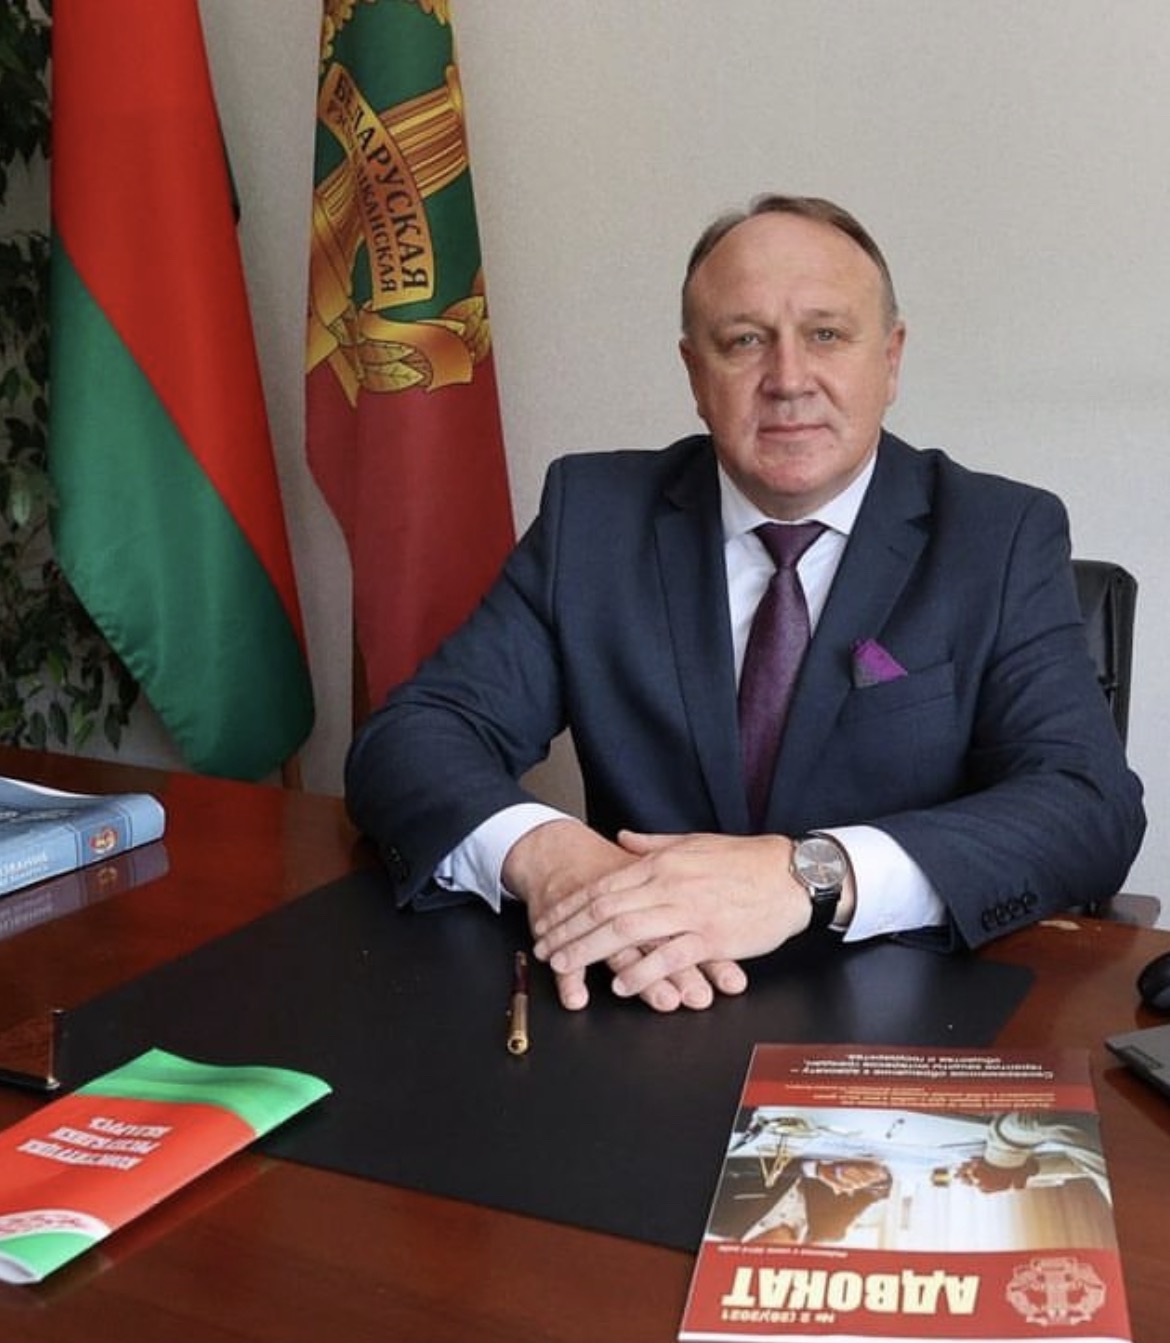 С  ДНЕМ НАРОДНОГО ЕДИНСТВА!  Поздравление  председателя Белорусской республиканской коллегии адвокатов 